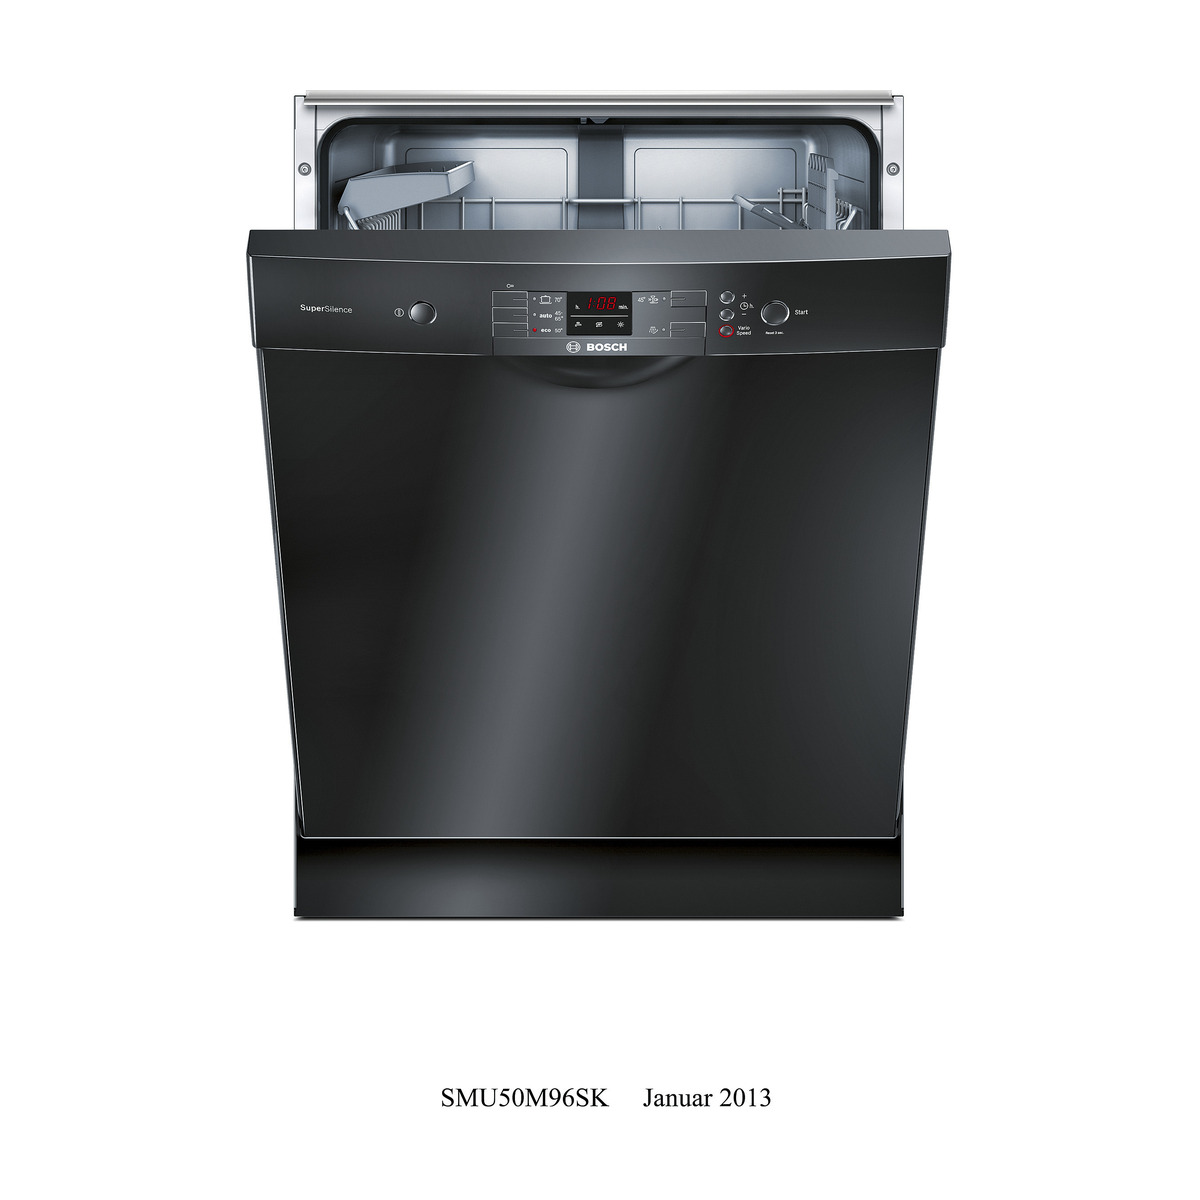 Встраиваемая посудомоечная машина черная. Посудомоечная машина Bosch 45 отдельностоящая. Бош посудомоечная машина 45 отдельностоящая. Посудомоечная машина Bertazzoni dw60bit. Посудомоечная машина бош 45 см отдельностоящая черная.